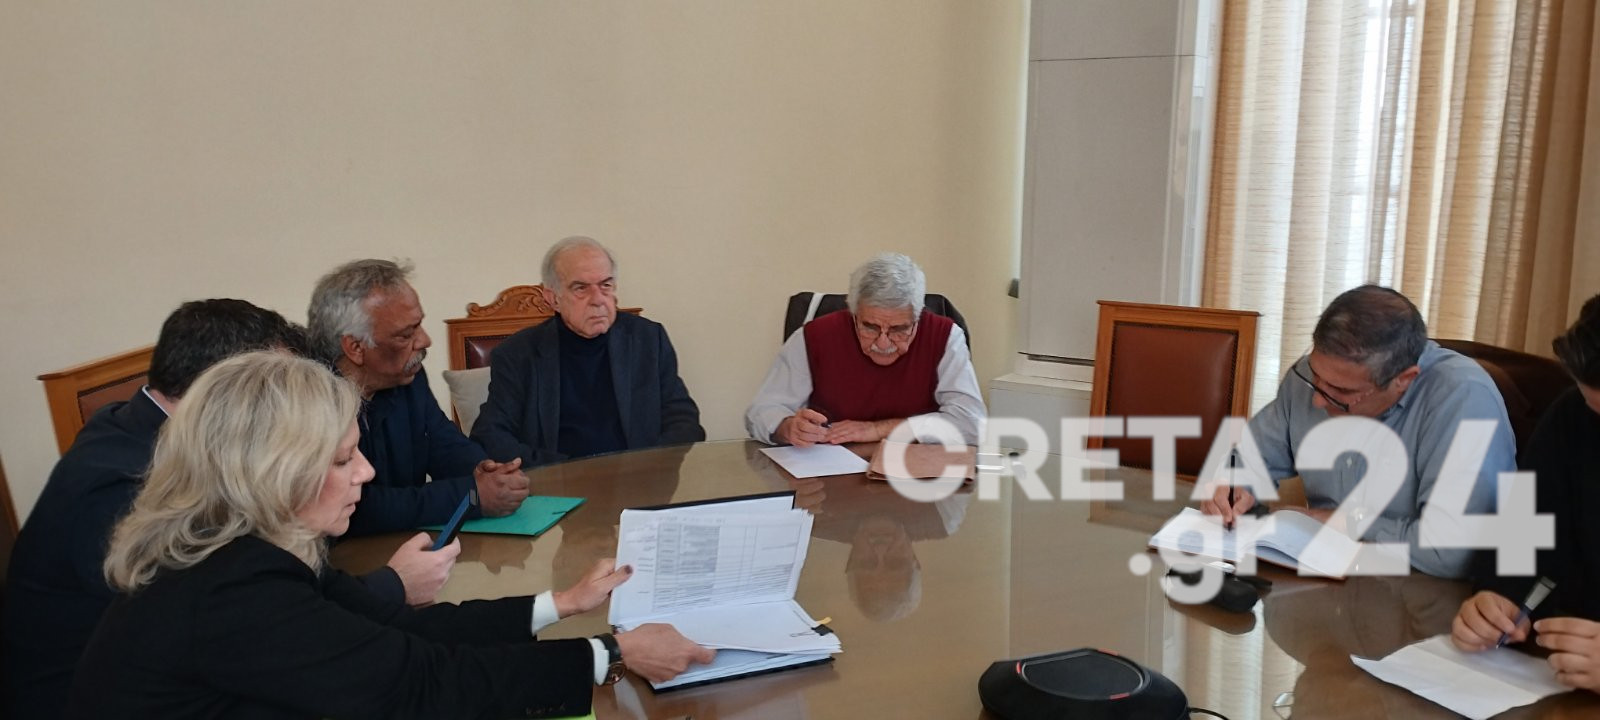 Ηράκλειο: Στο Δημοτικό Συμβούλιο η μετεγκατάσταση του καταυλισμού των Ρομά